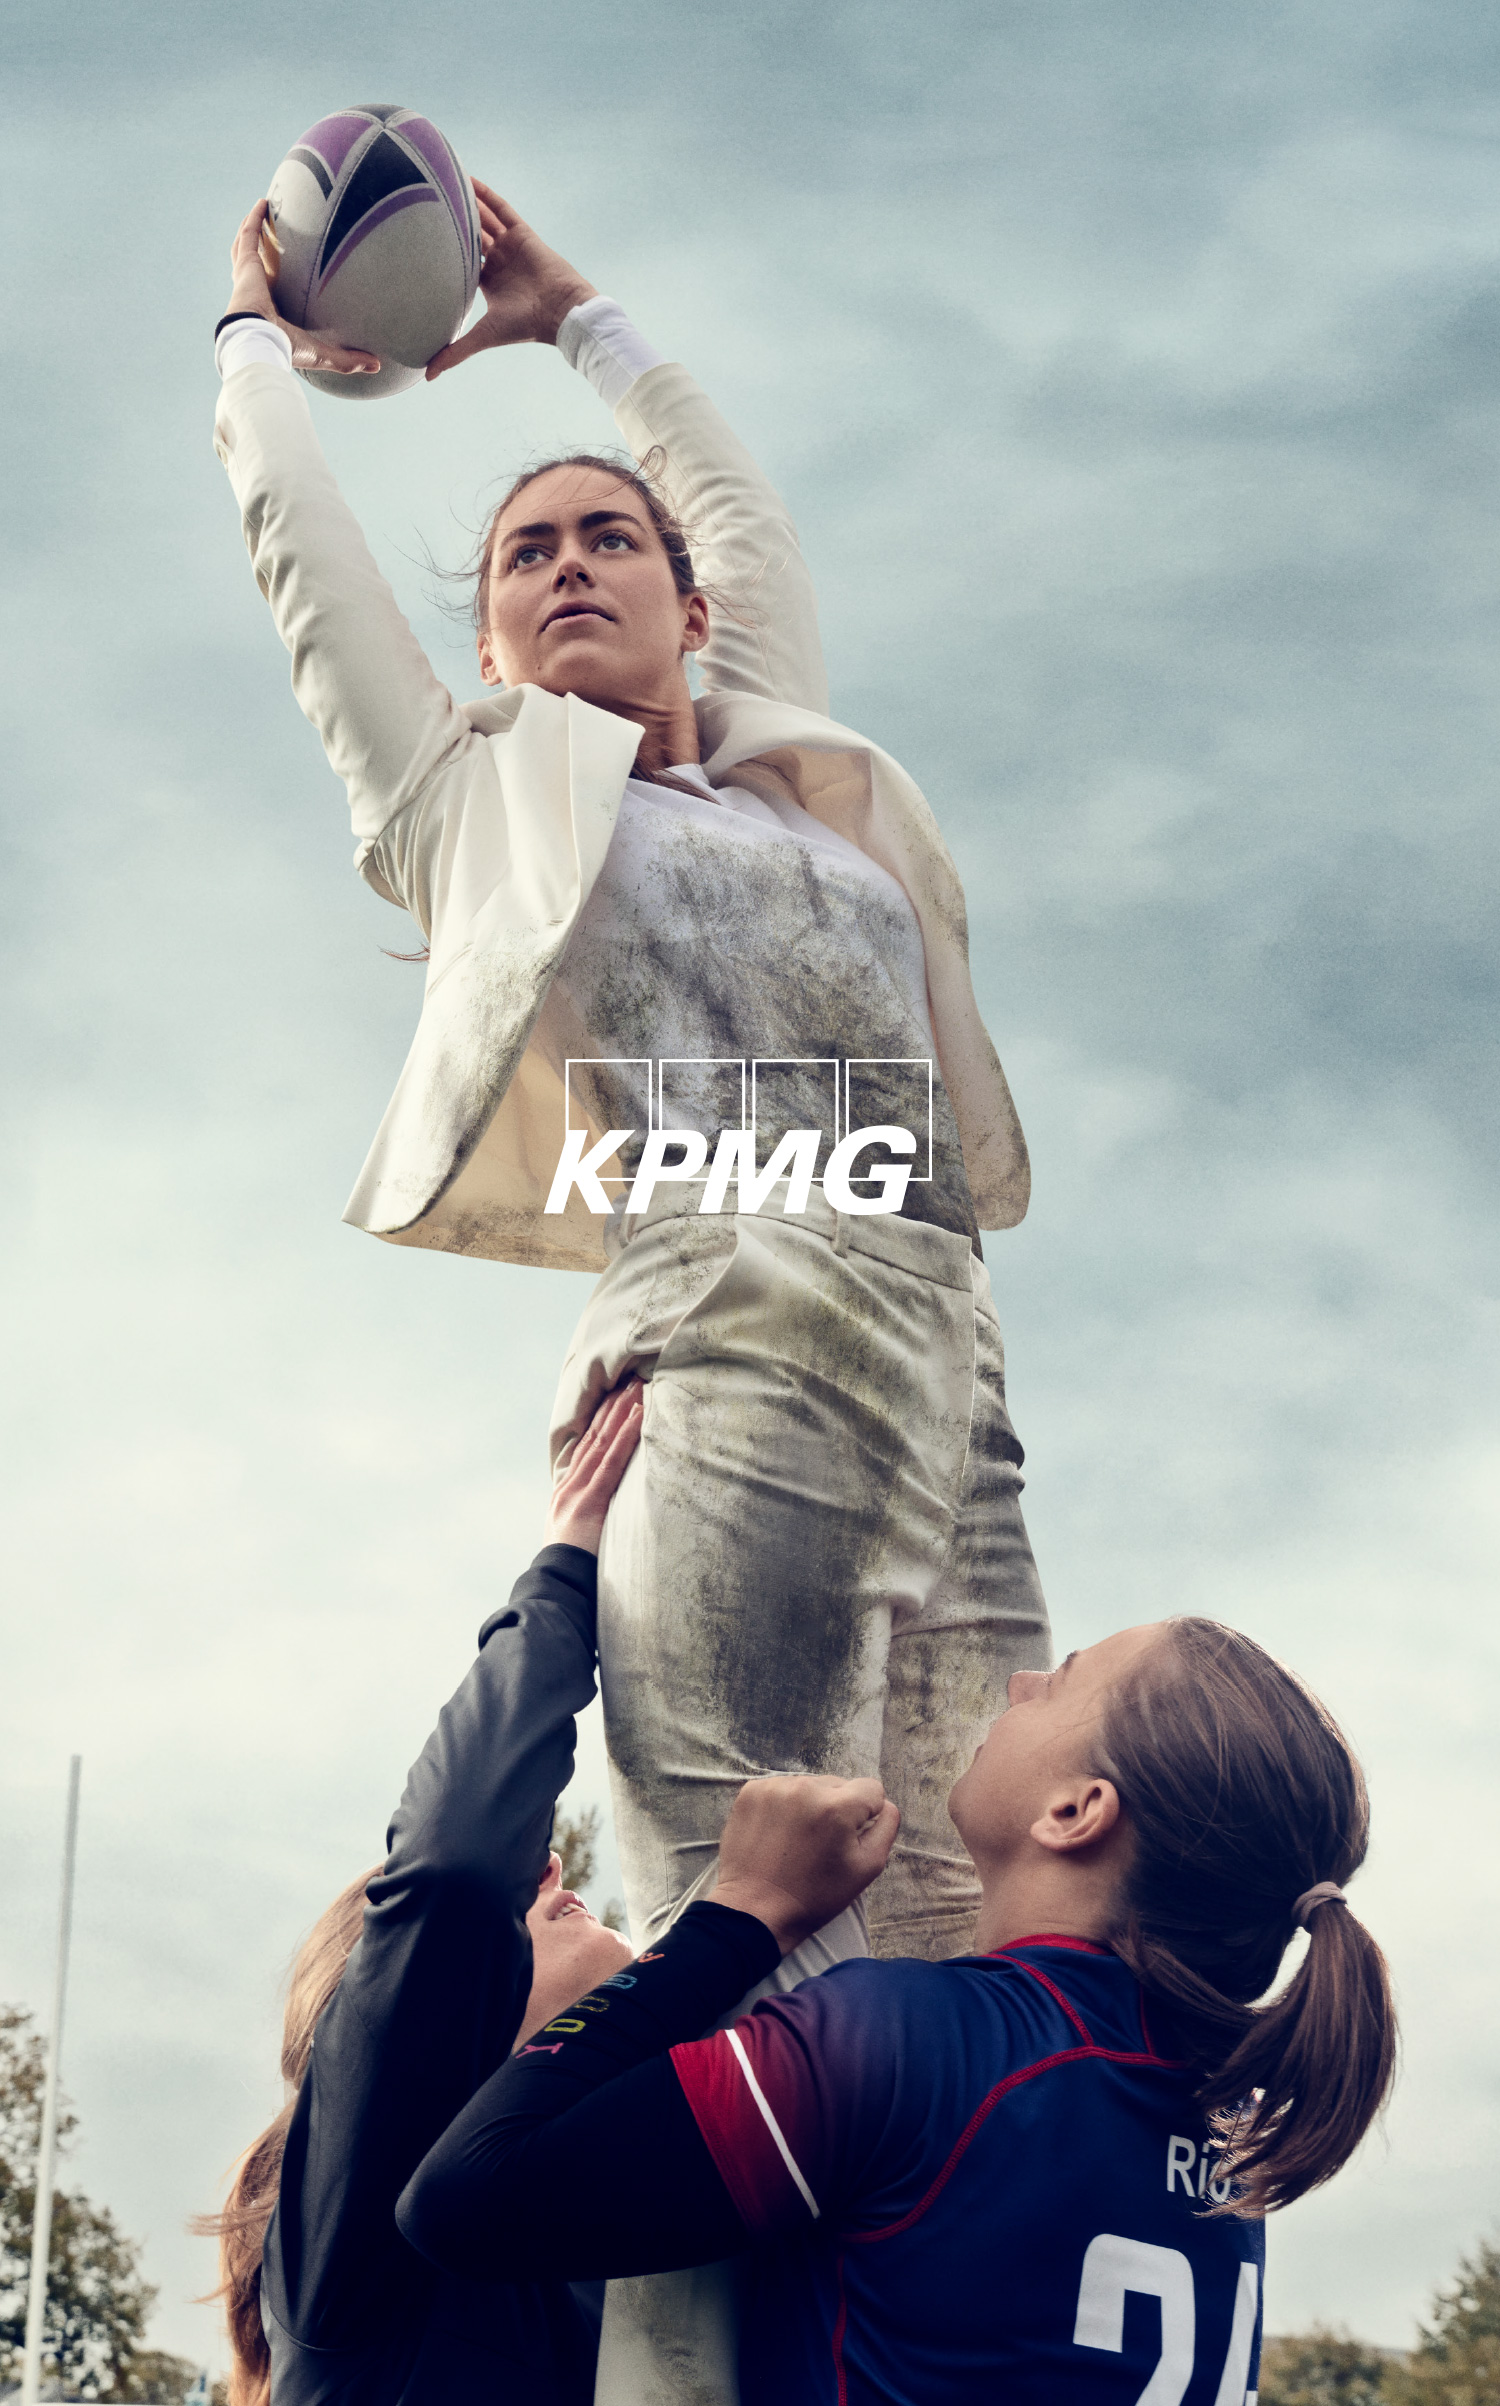 KPMG Denmark